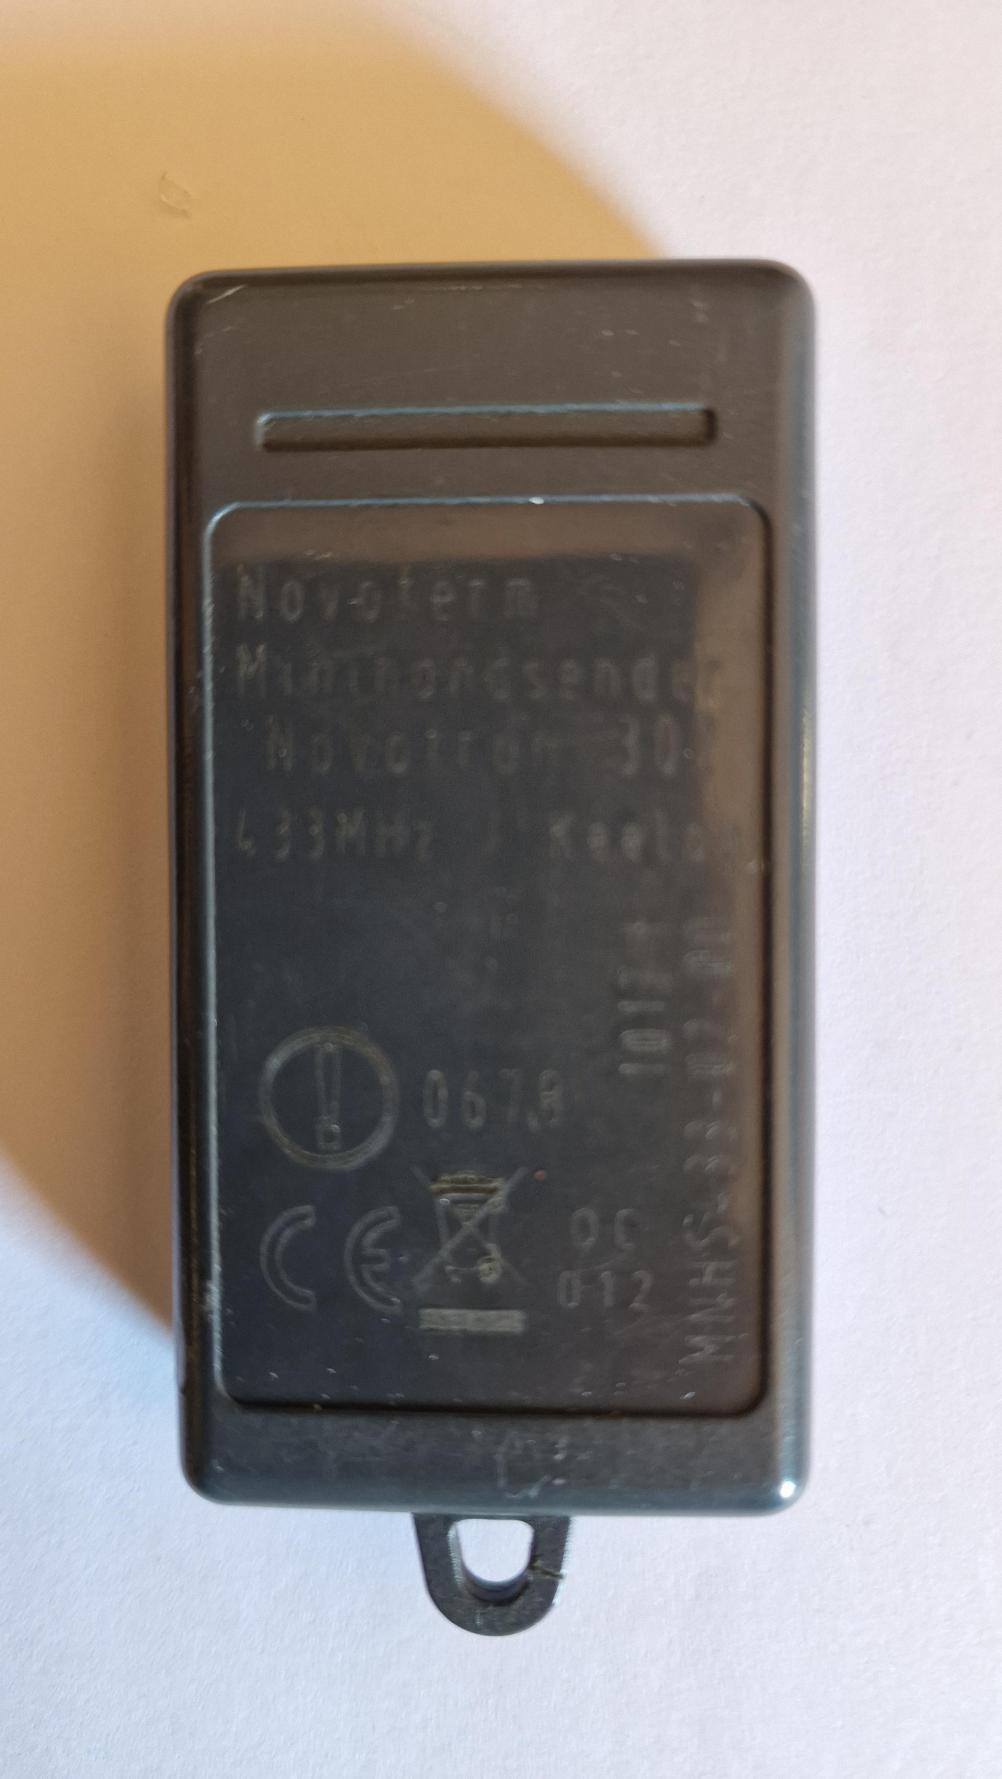 Novoferm novotron 302 Remote Control - Back Image